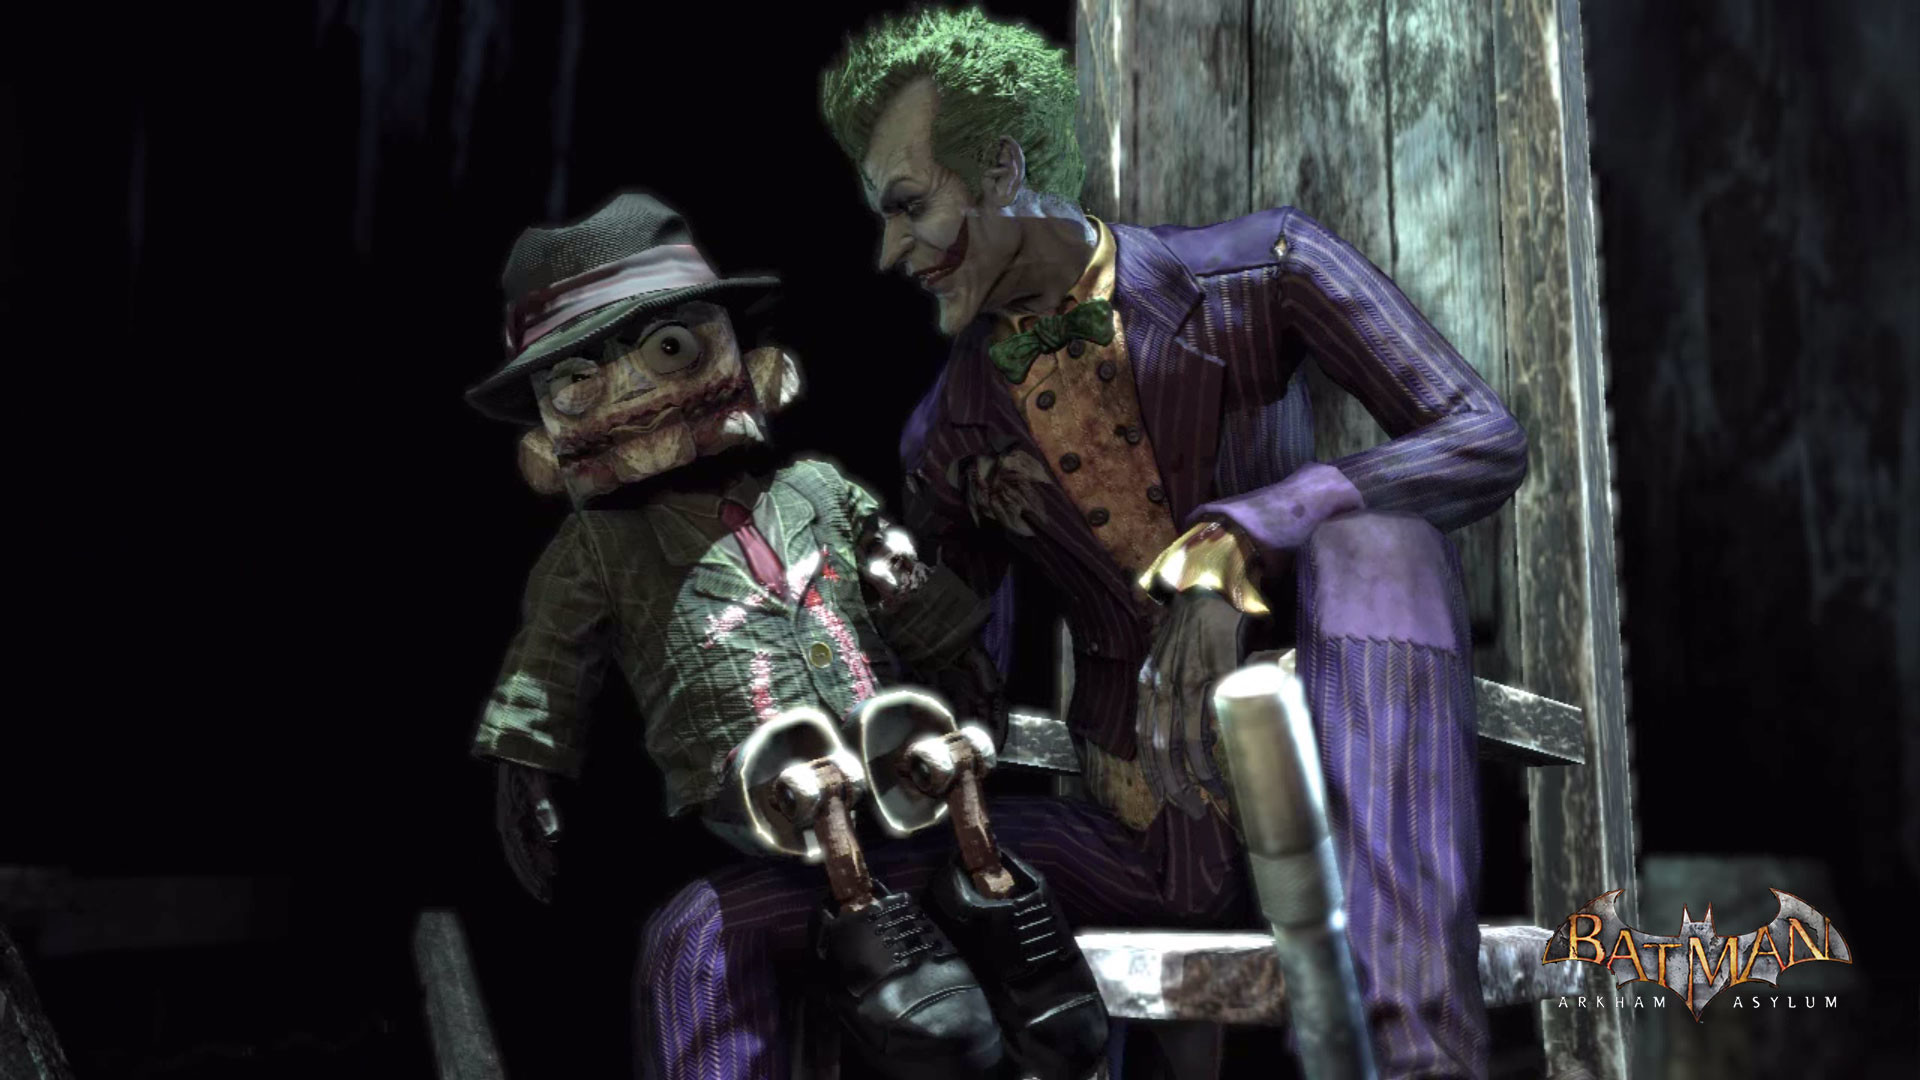 Batman Arkham Asylum – Joker Scarface puppet wallpaper